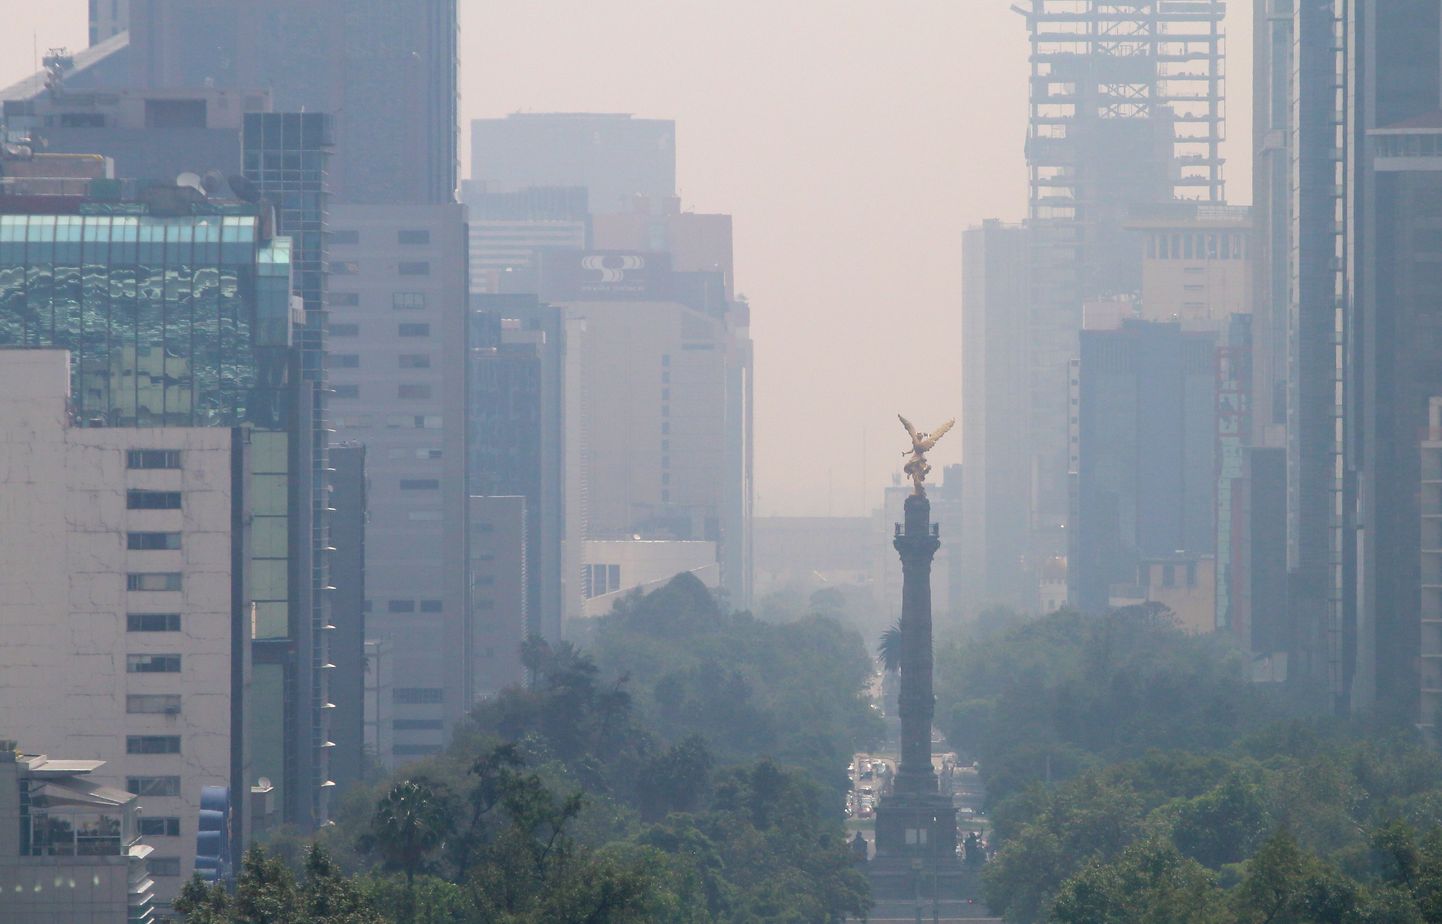 México õhk on saaste tõttu peaaegu läbipaistmatu.